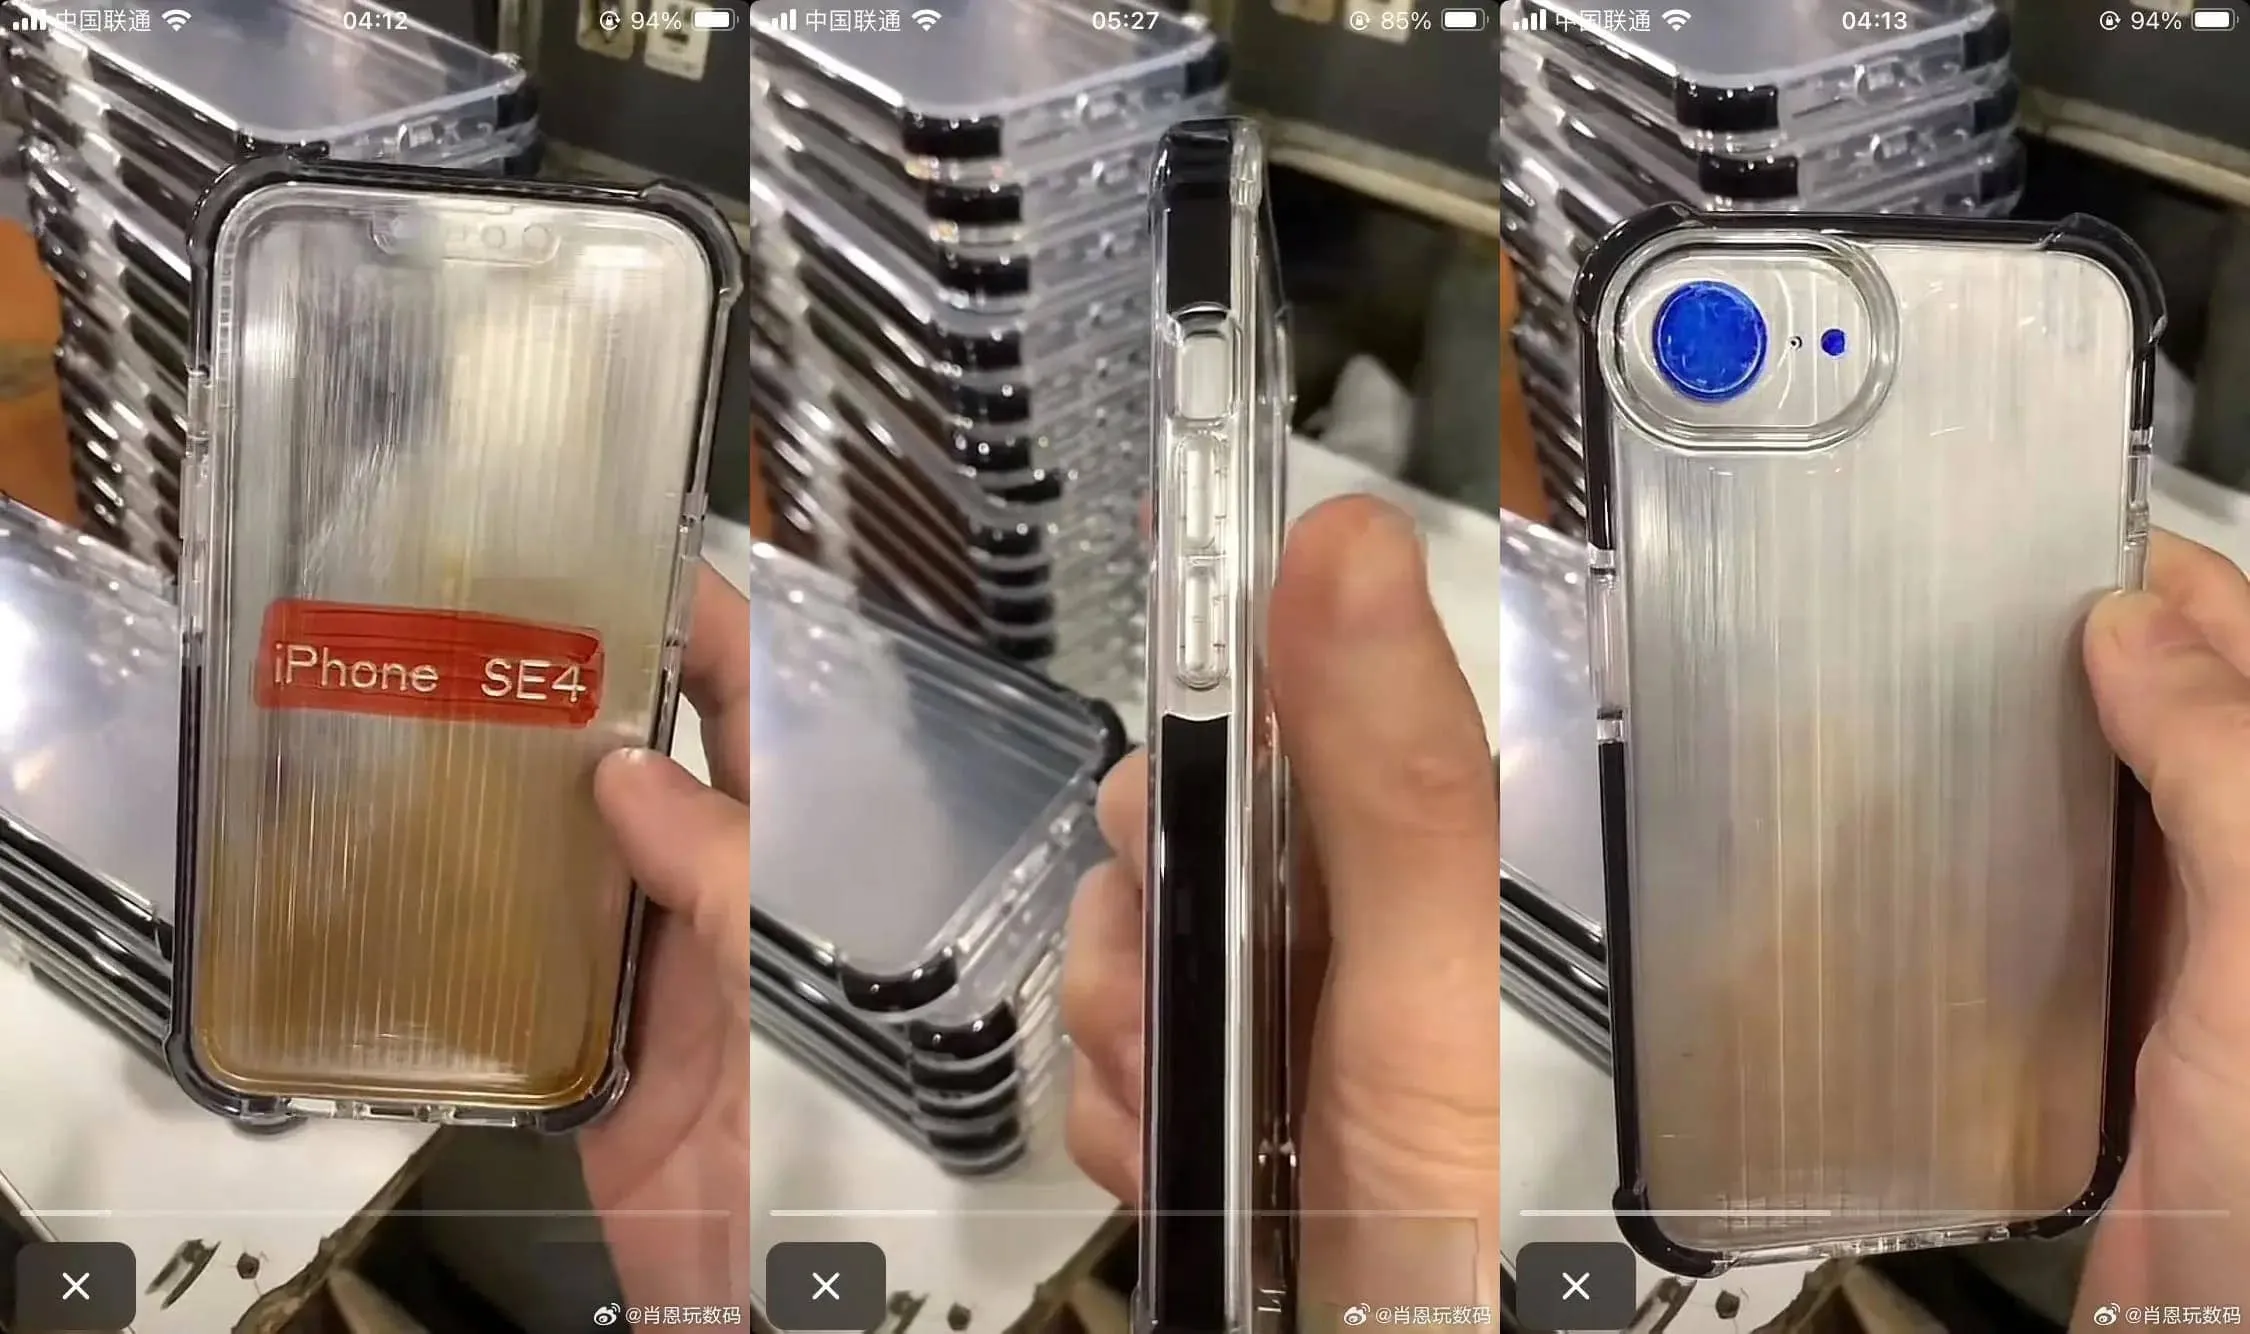 Появились изображения чехла для iPhone SE 4: ожидаются изменения в дизайне дисплея и камеры